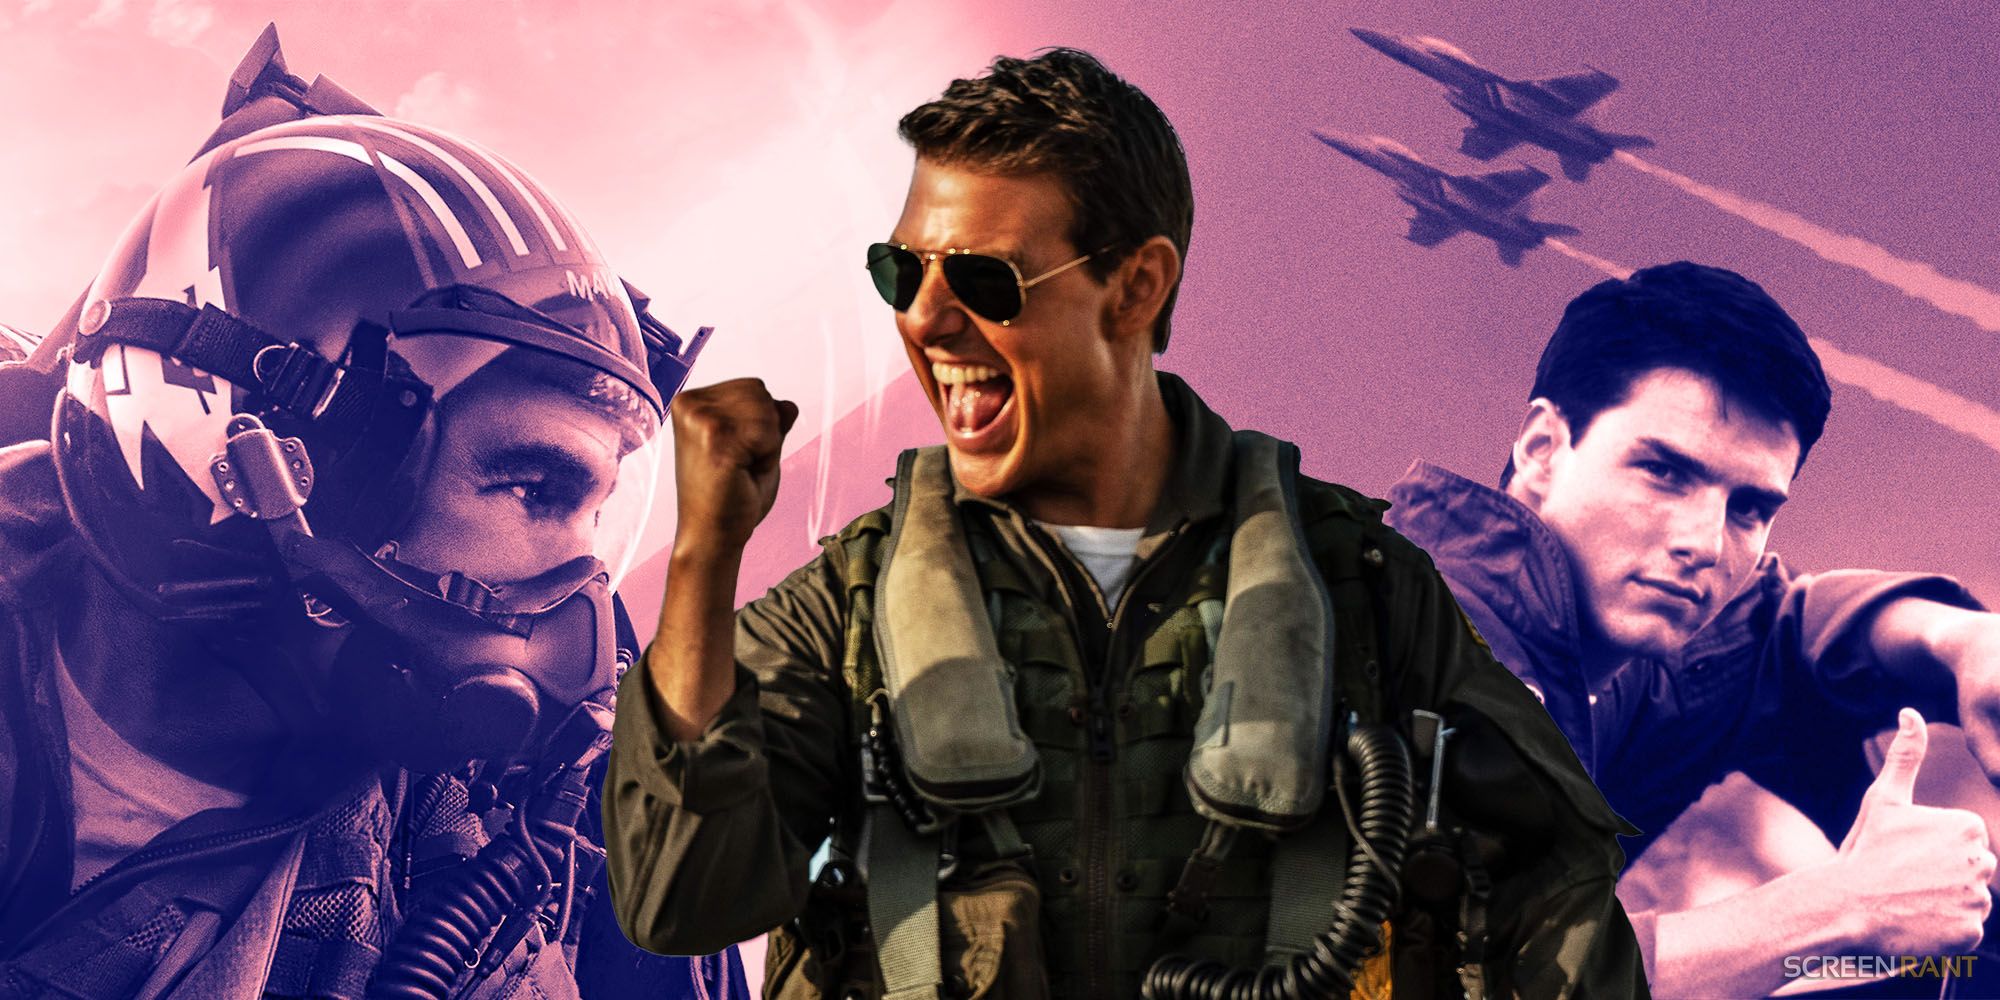 Tom Cruise in Top Gun: Maverick and original Top Gun